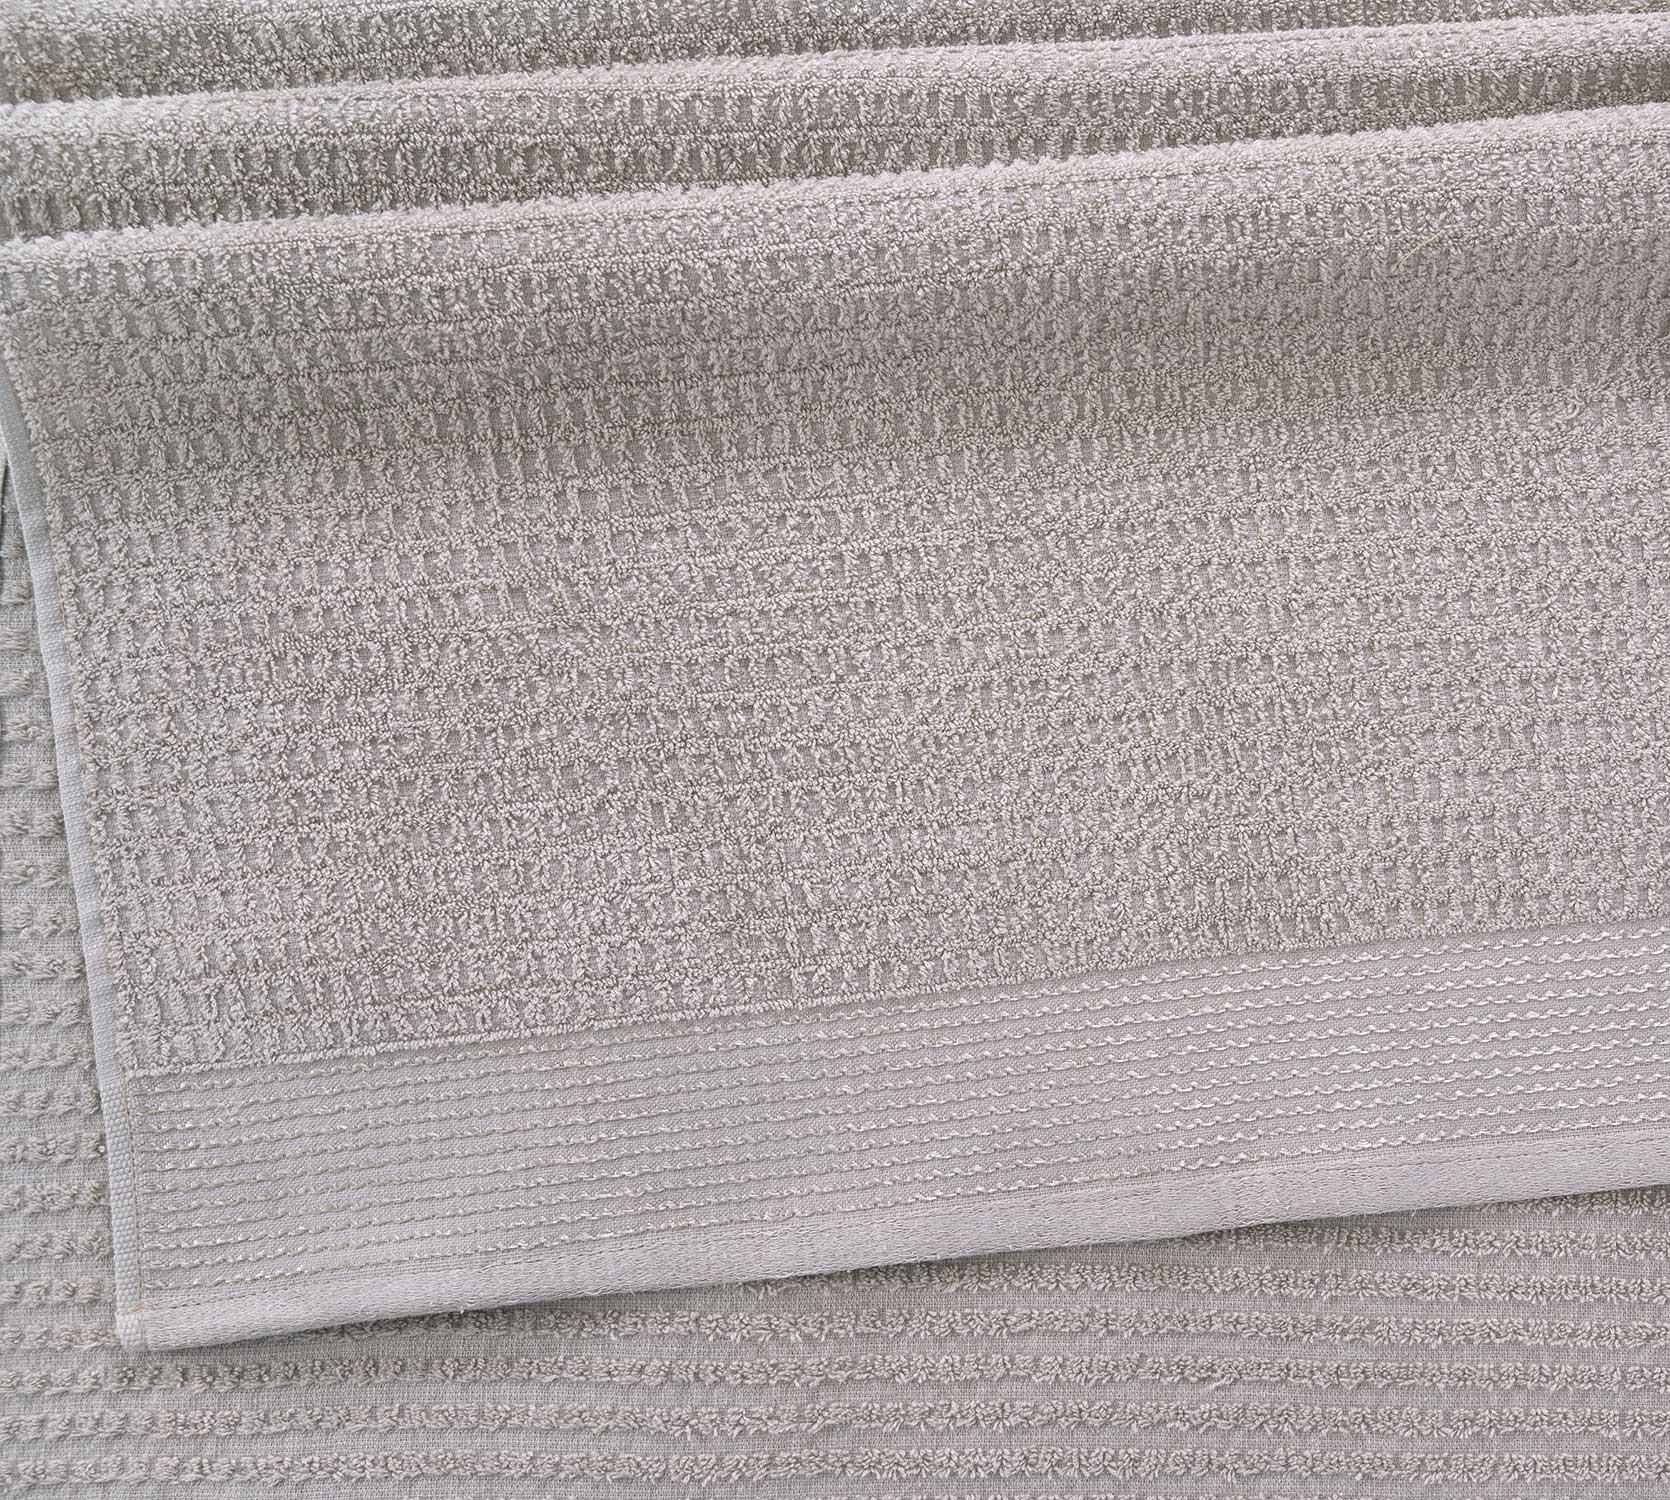 Постельное белье Полотенце махровое для рук и лица 50x80, Волна серый фото